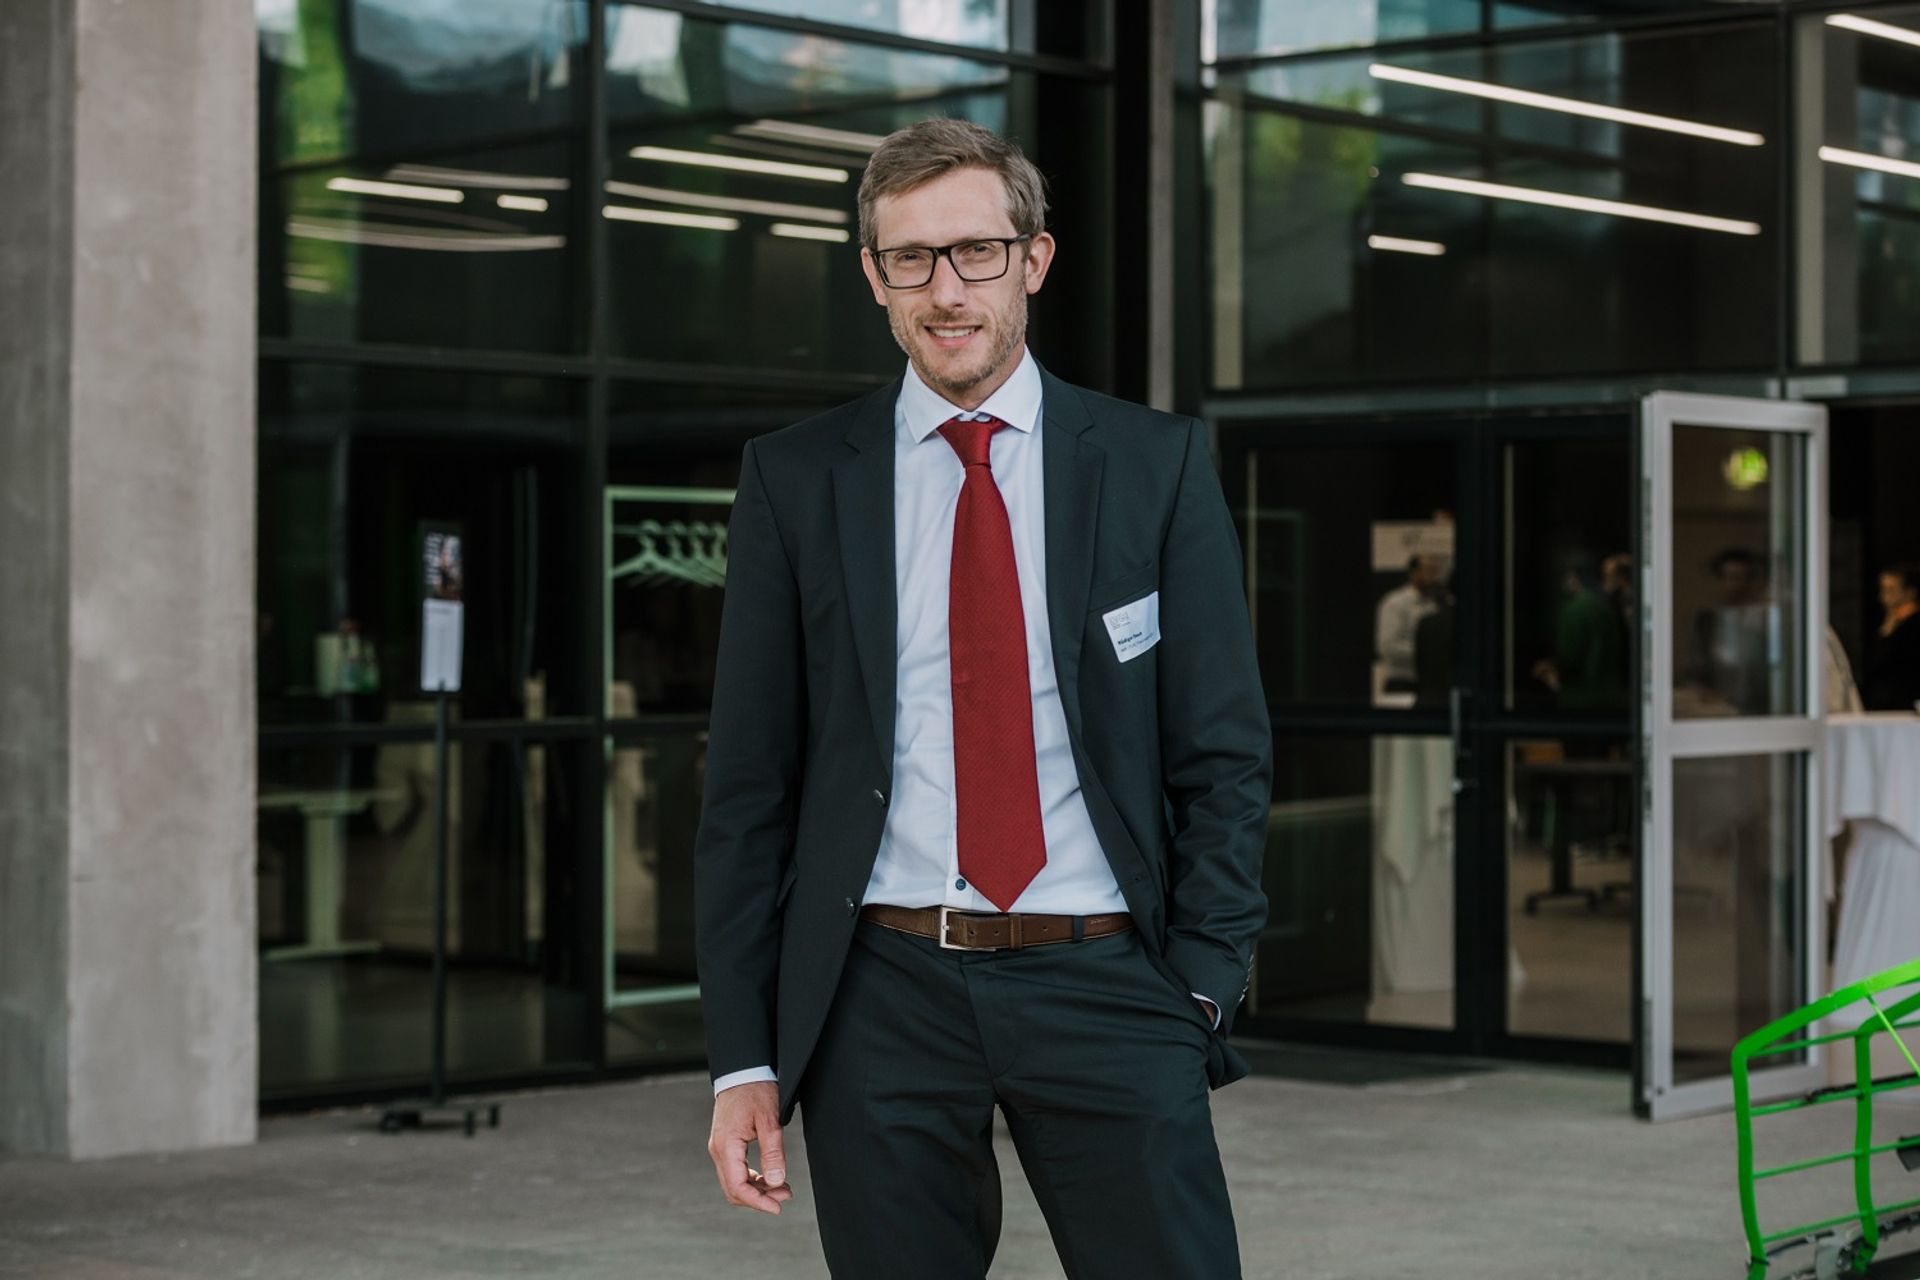 Rüdiger Daub, Professore all’Università Tecnica di Monaco di Baviera e Direttore del Fraunhofer IGCV, al NOI Techpark di Bolzano